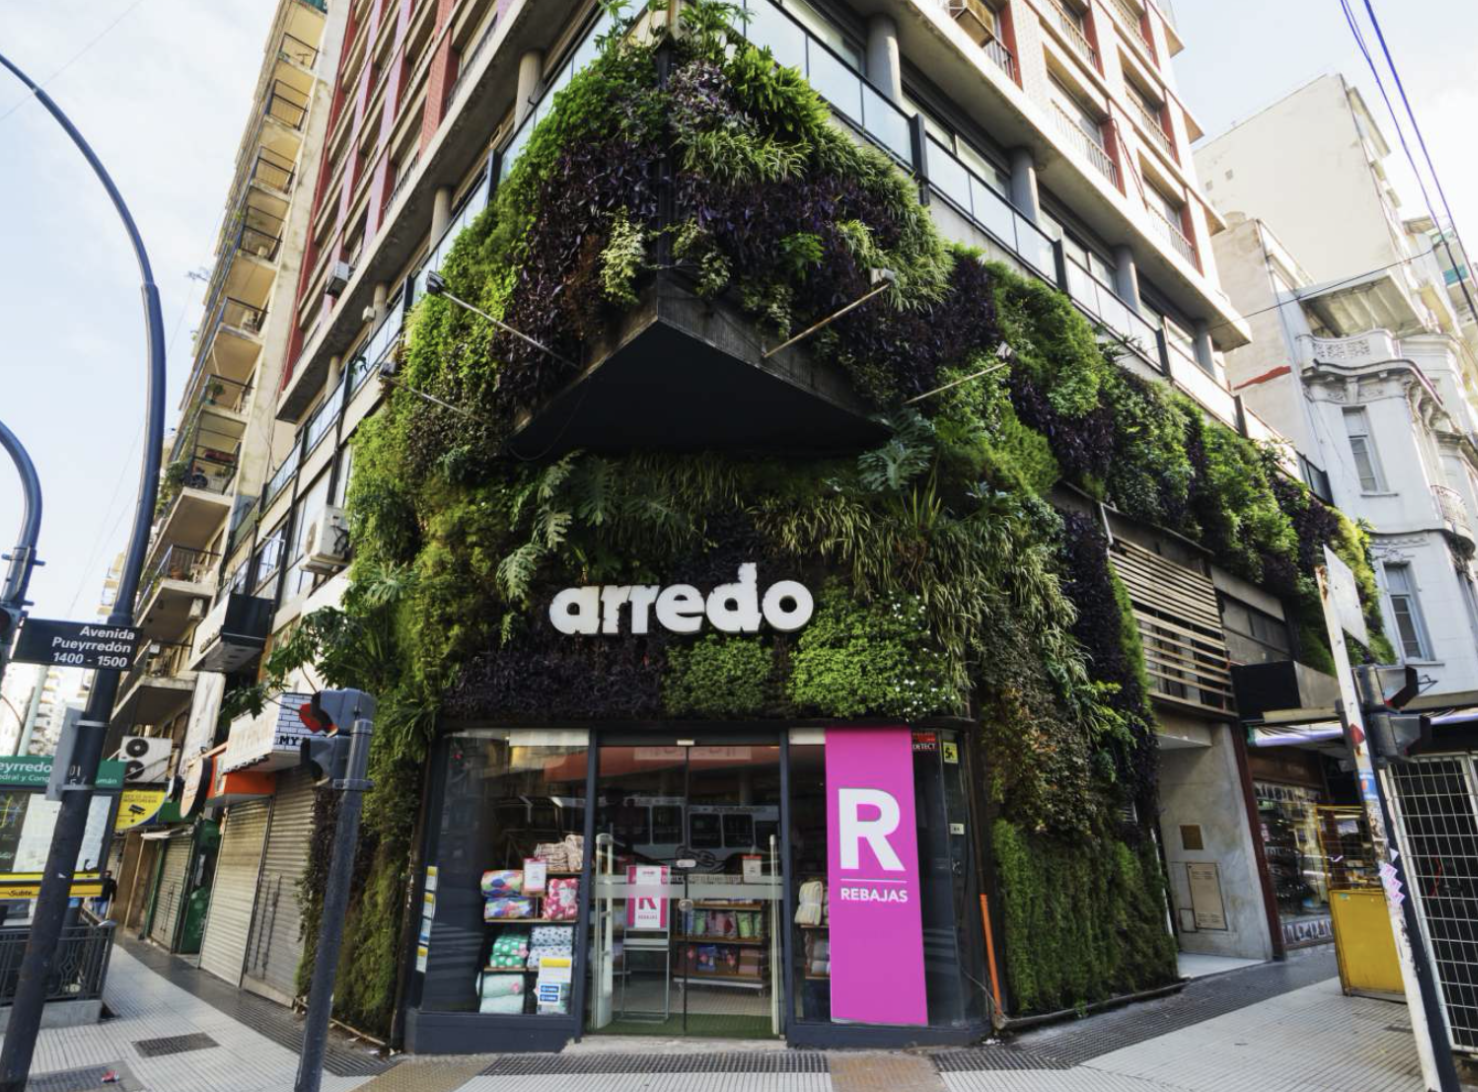 Edificios verdes en argentina